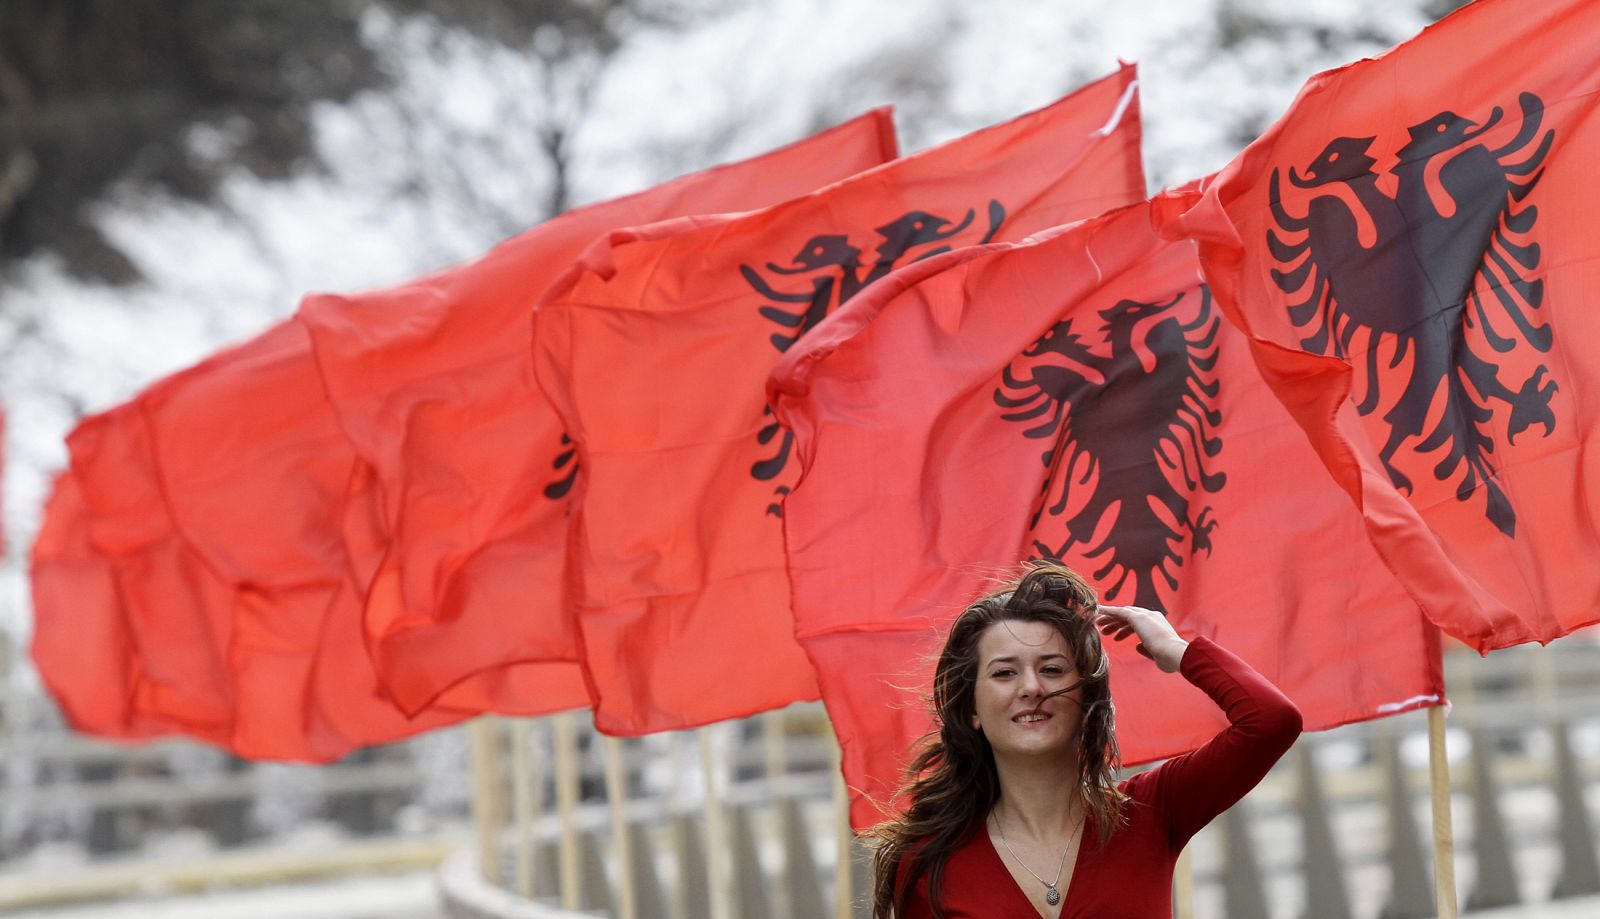 Kosovo celebra sus dos años de independecia sin un estatus jurídico aún claro